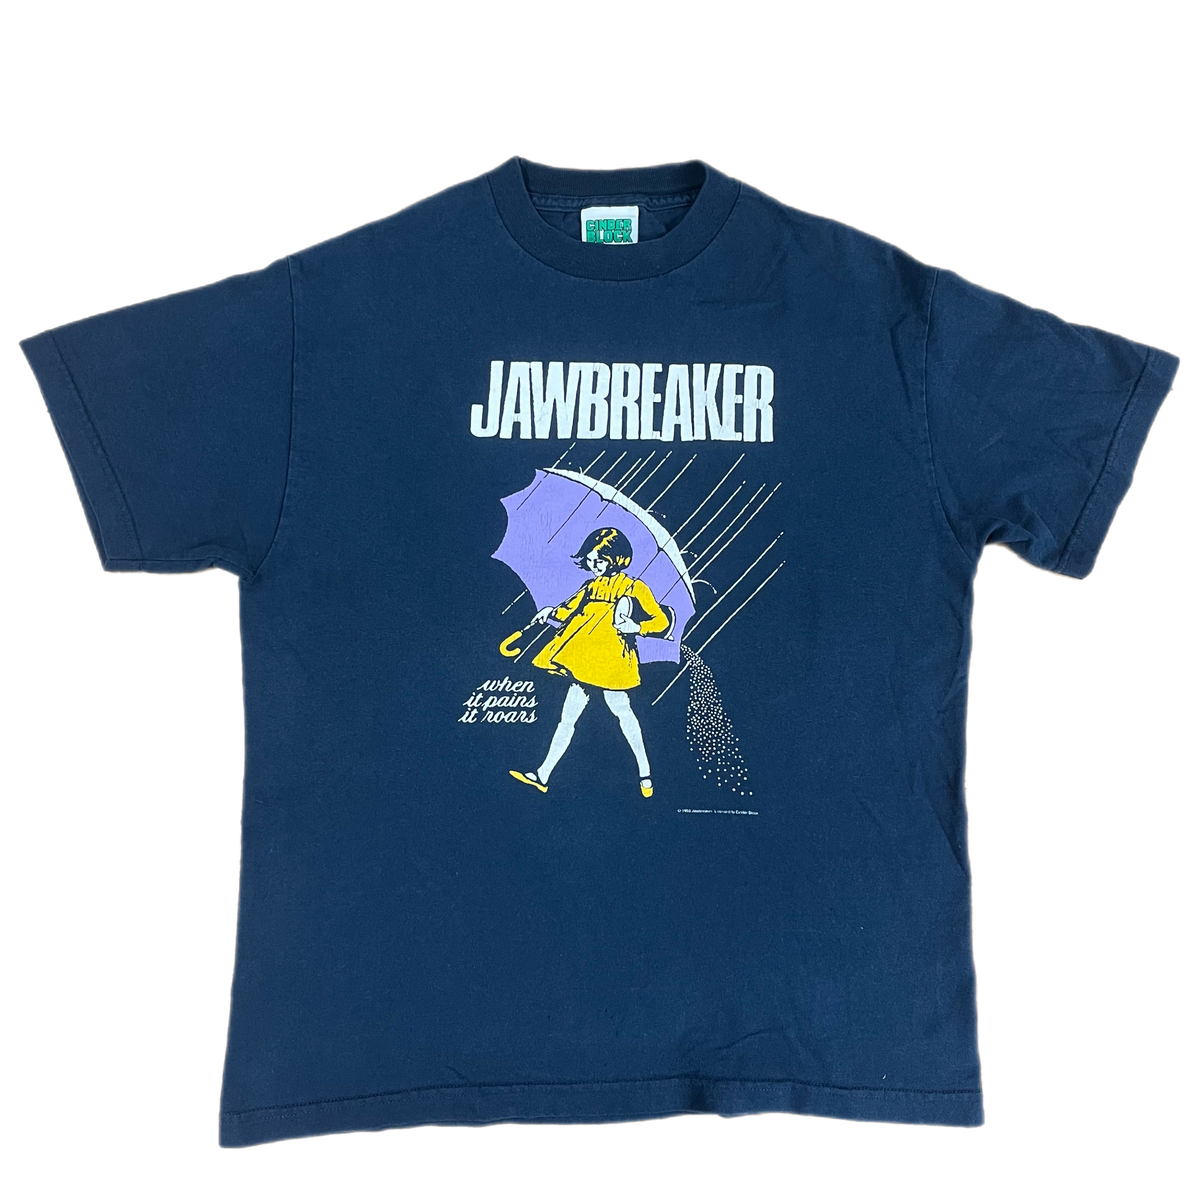 Vintage Jawbreaker &quot;When It Pains It Roars&quot; T-Shirt